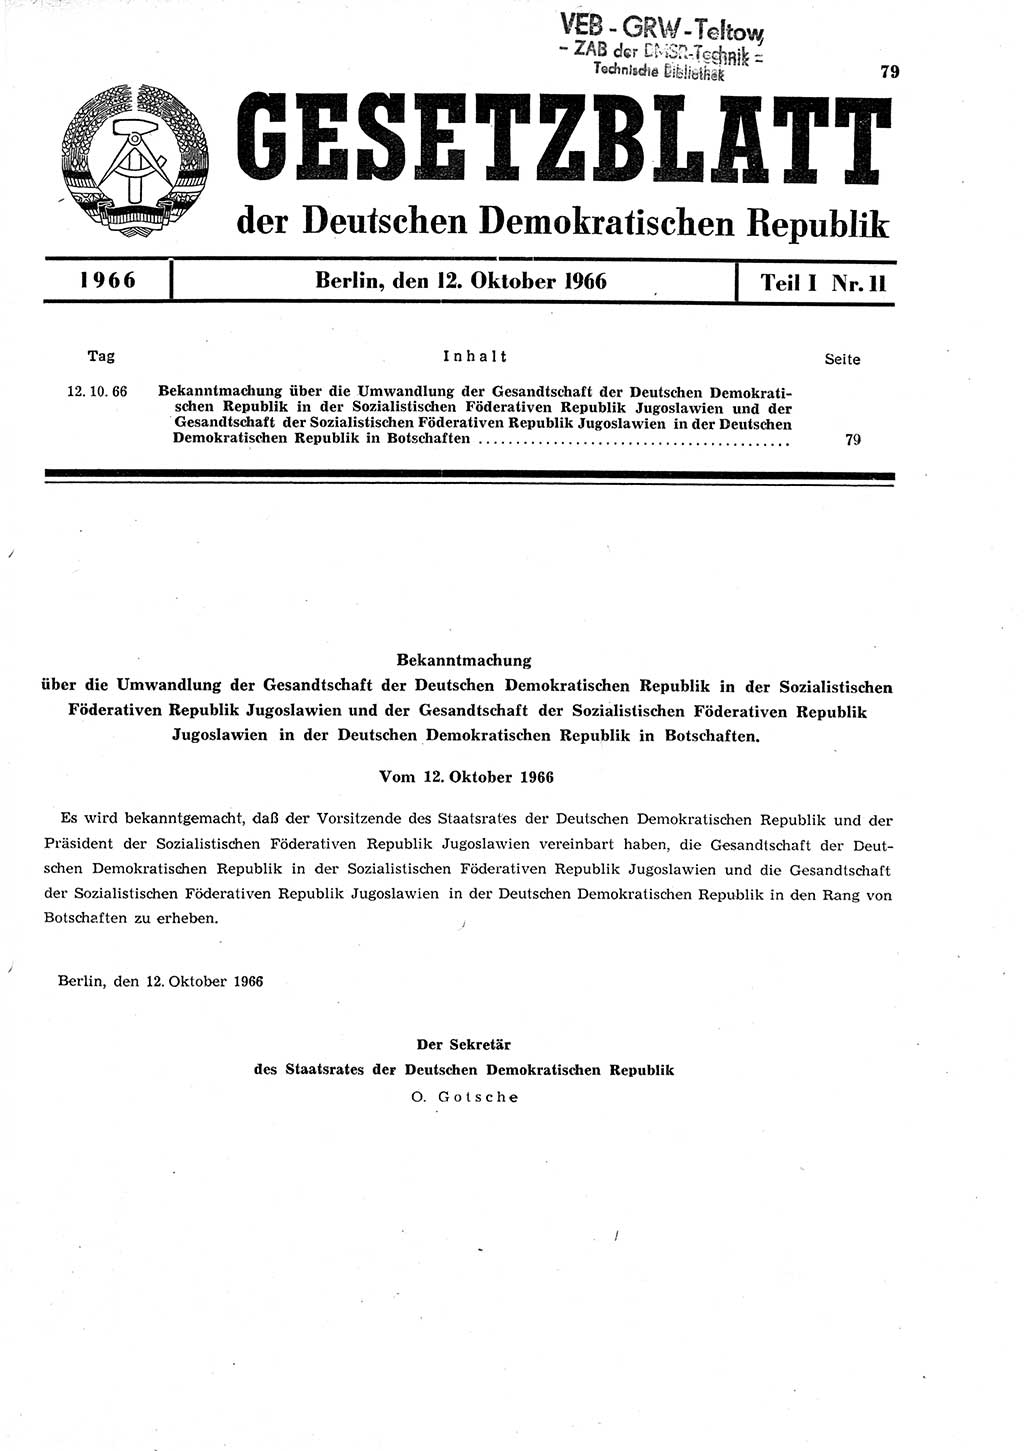 Gesetzblatt (GBl.) der Deutschen Demokratischen Republik (DDR) Teil Ⅰ 1966, Seite 79 (GBl. DDR Ⅰ 1966, S. 79)